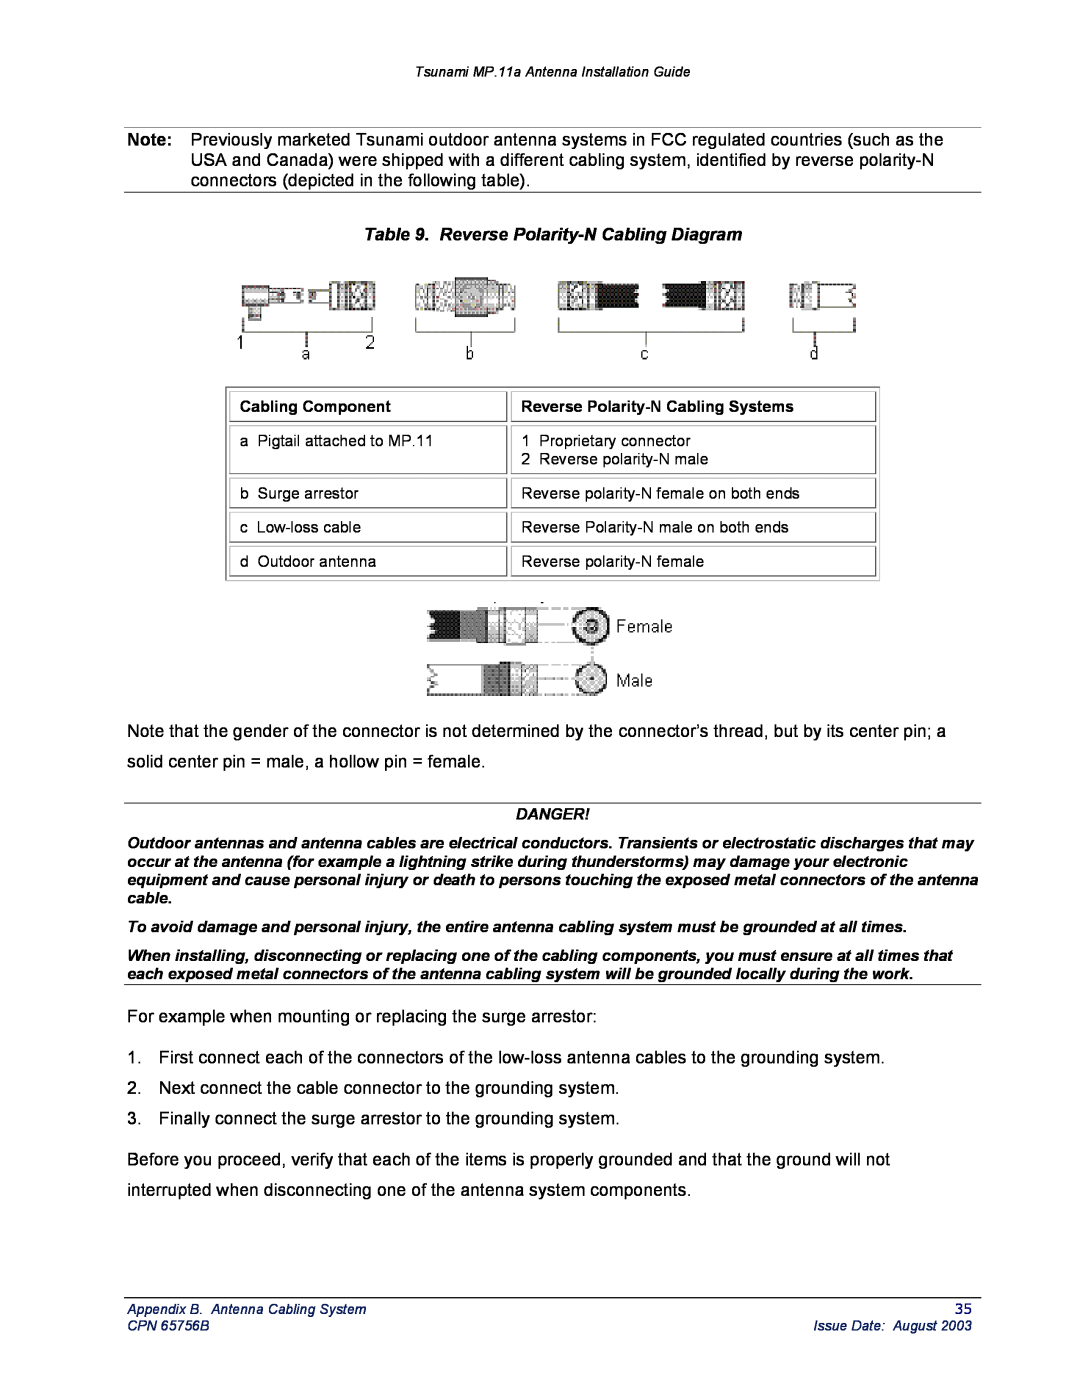 Proxim CPN 65756B manual Reverse Polarity-N Cabling Diagram 